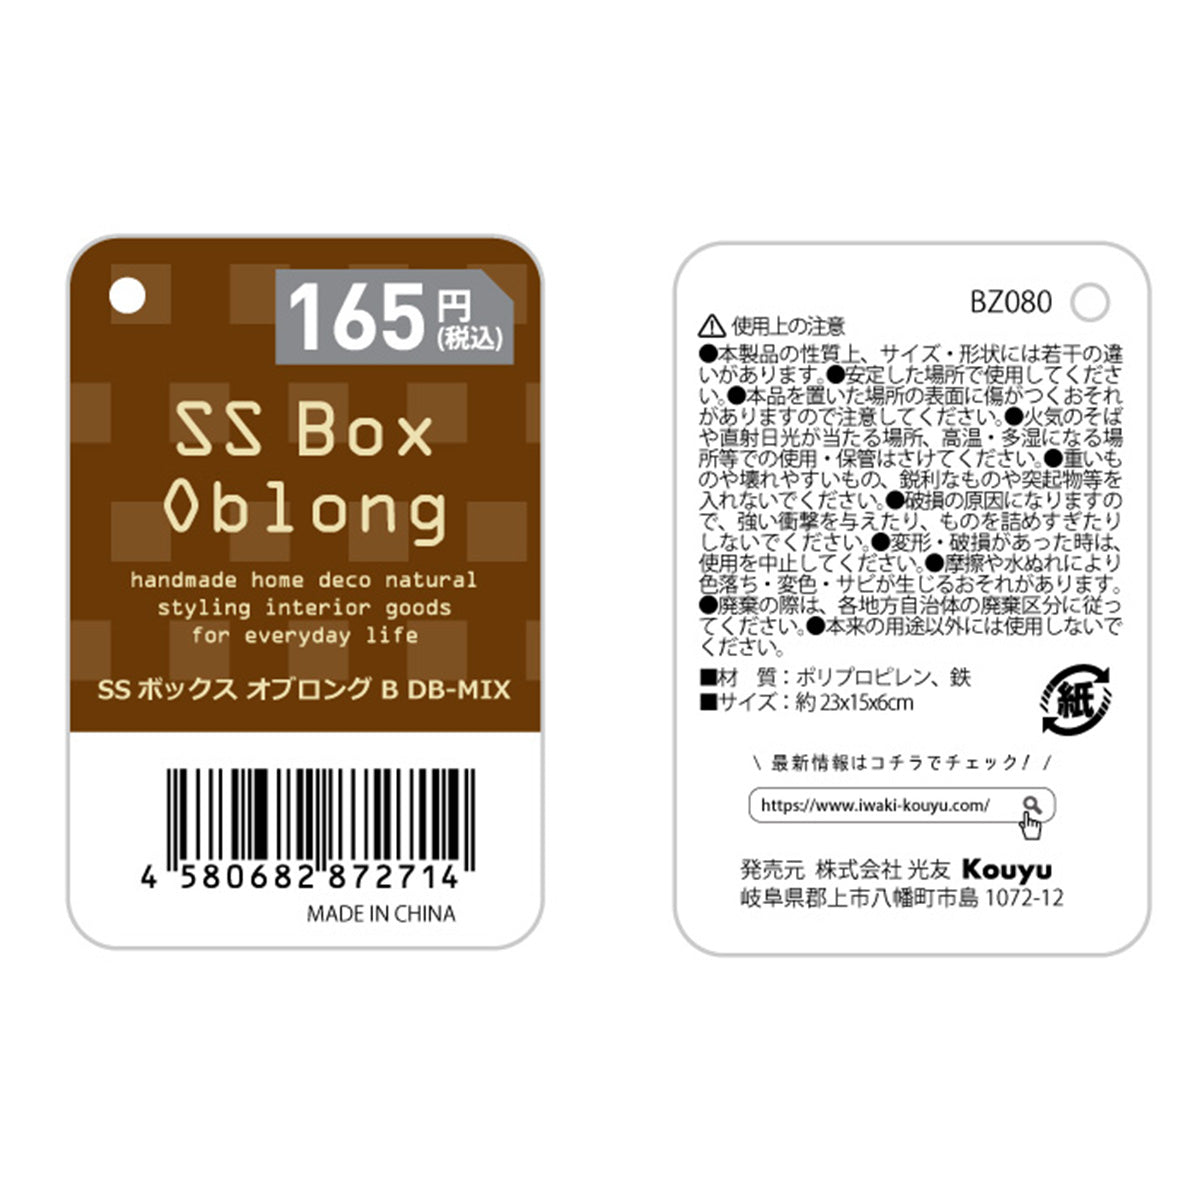 SSボックス オブロングB DB-MIX 1523/322977